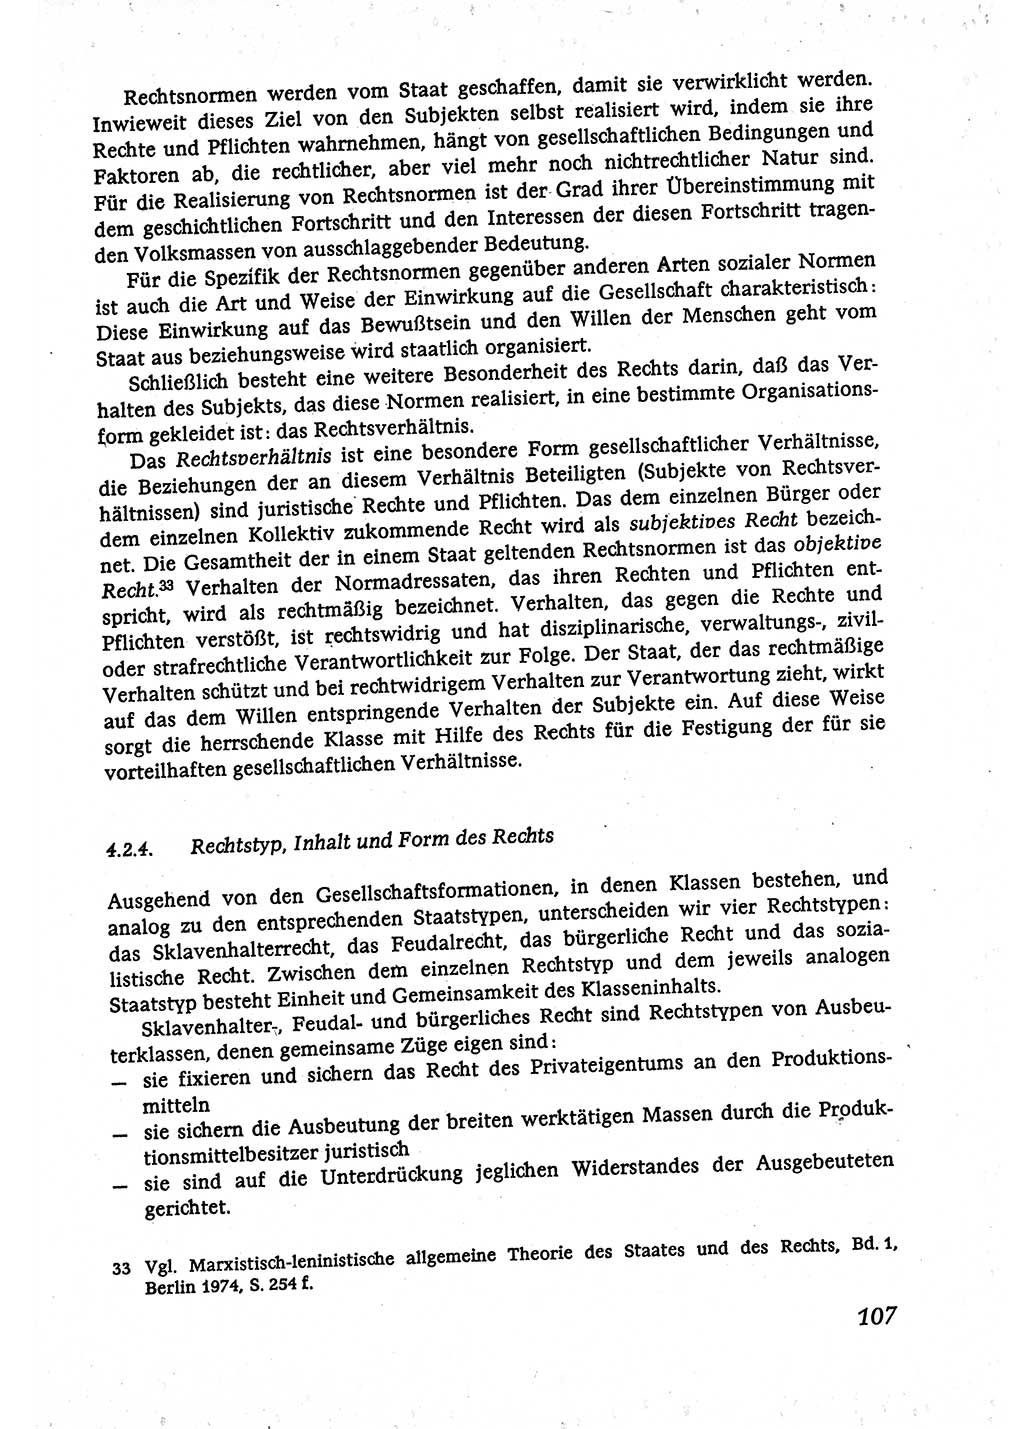 Marxistisch-leninistische (ML) Staats- und Rechtstheorie [Deutsche Demokratische Republik (DDR)], Lehrbuch 1980, Seite 107 (ML St.-R.-Th. DDR Lb. 1980, S. 107)